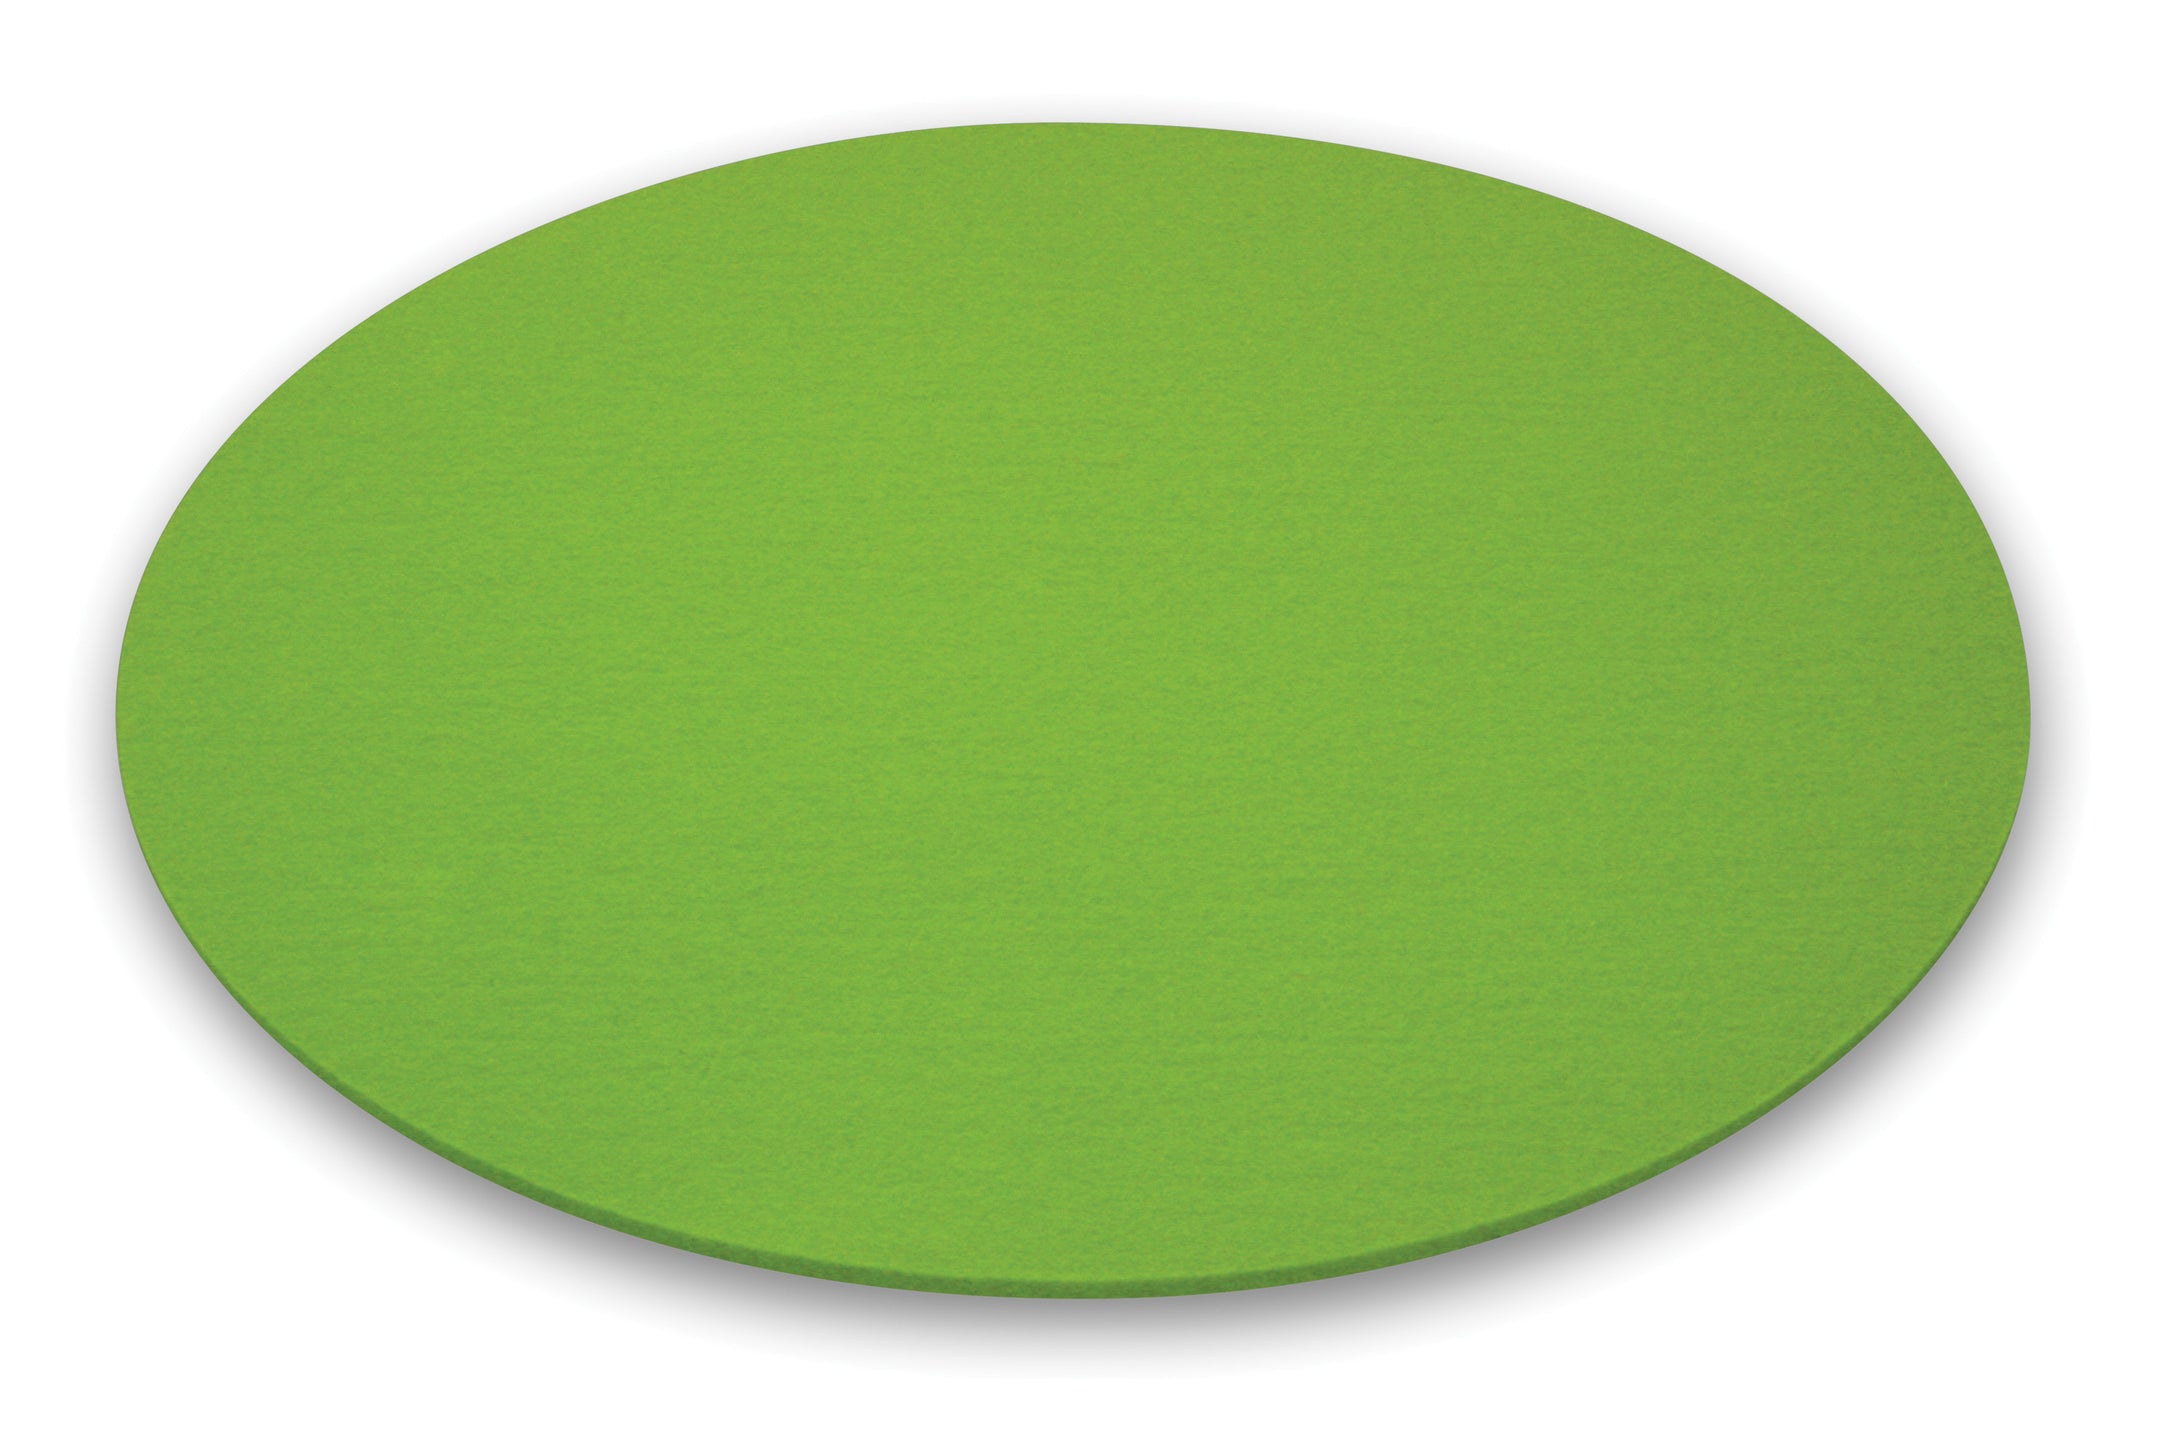 Runde Filzauflage für den Leuchttisch BUBBLE von Moree in grün; Ø 40cm.